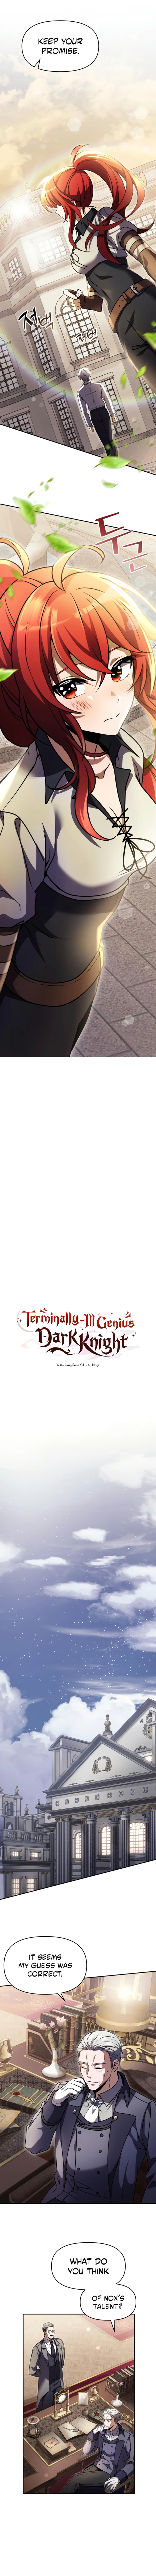 Terminally-Ill Genius Dark Knight - Chapter 8 Page 7